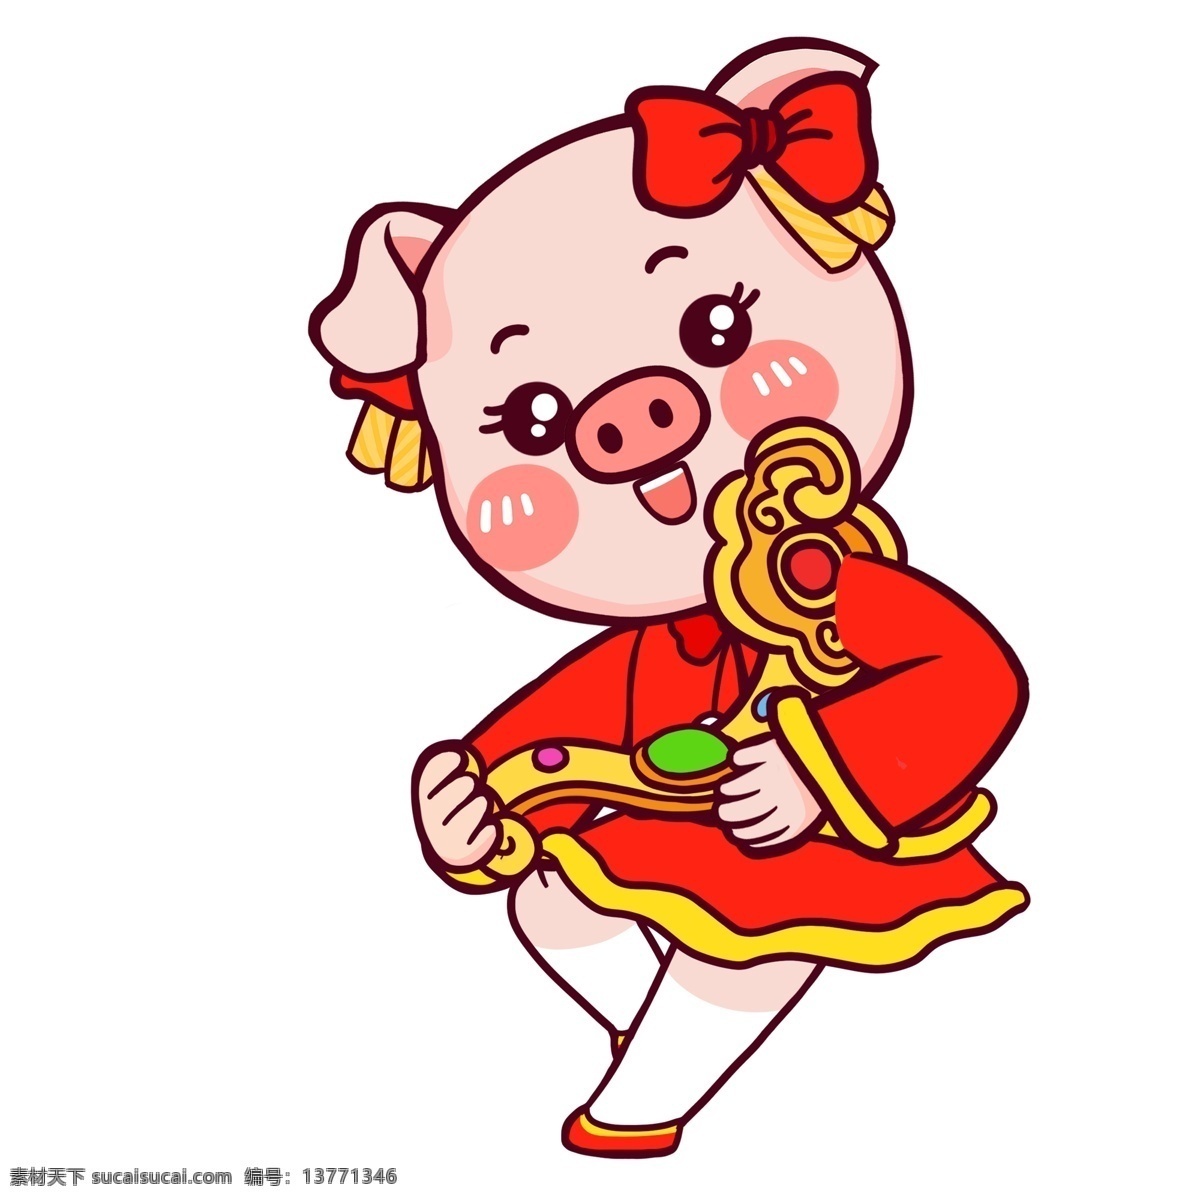 喜庆 过年 玉 如意 猪 女孩 中国风 春节 插画 可爱 手绘 潮漫 漫画 猪猪女孩 玉如意 新春 新年 猪年 2019年 小猪形象 猪年形象